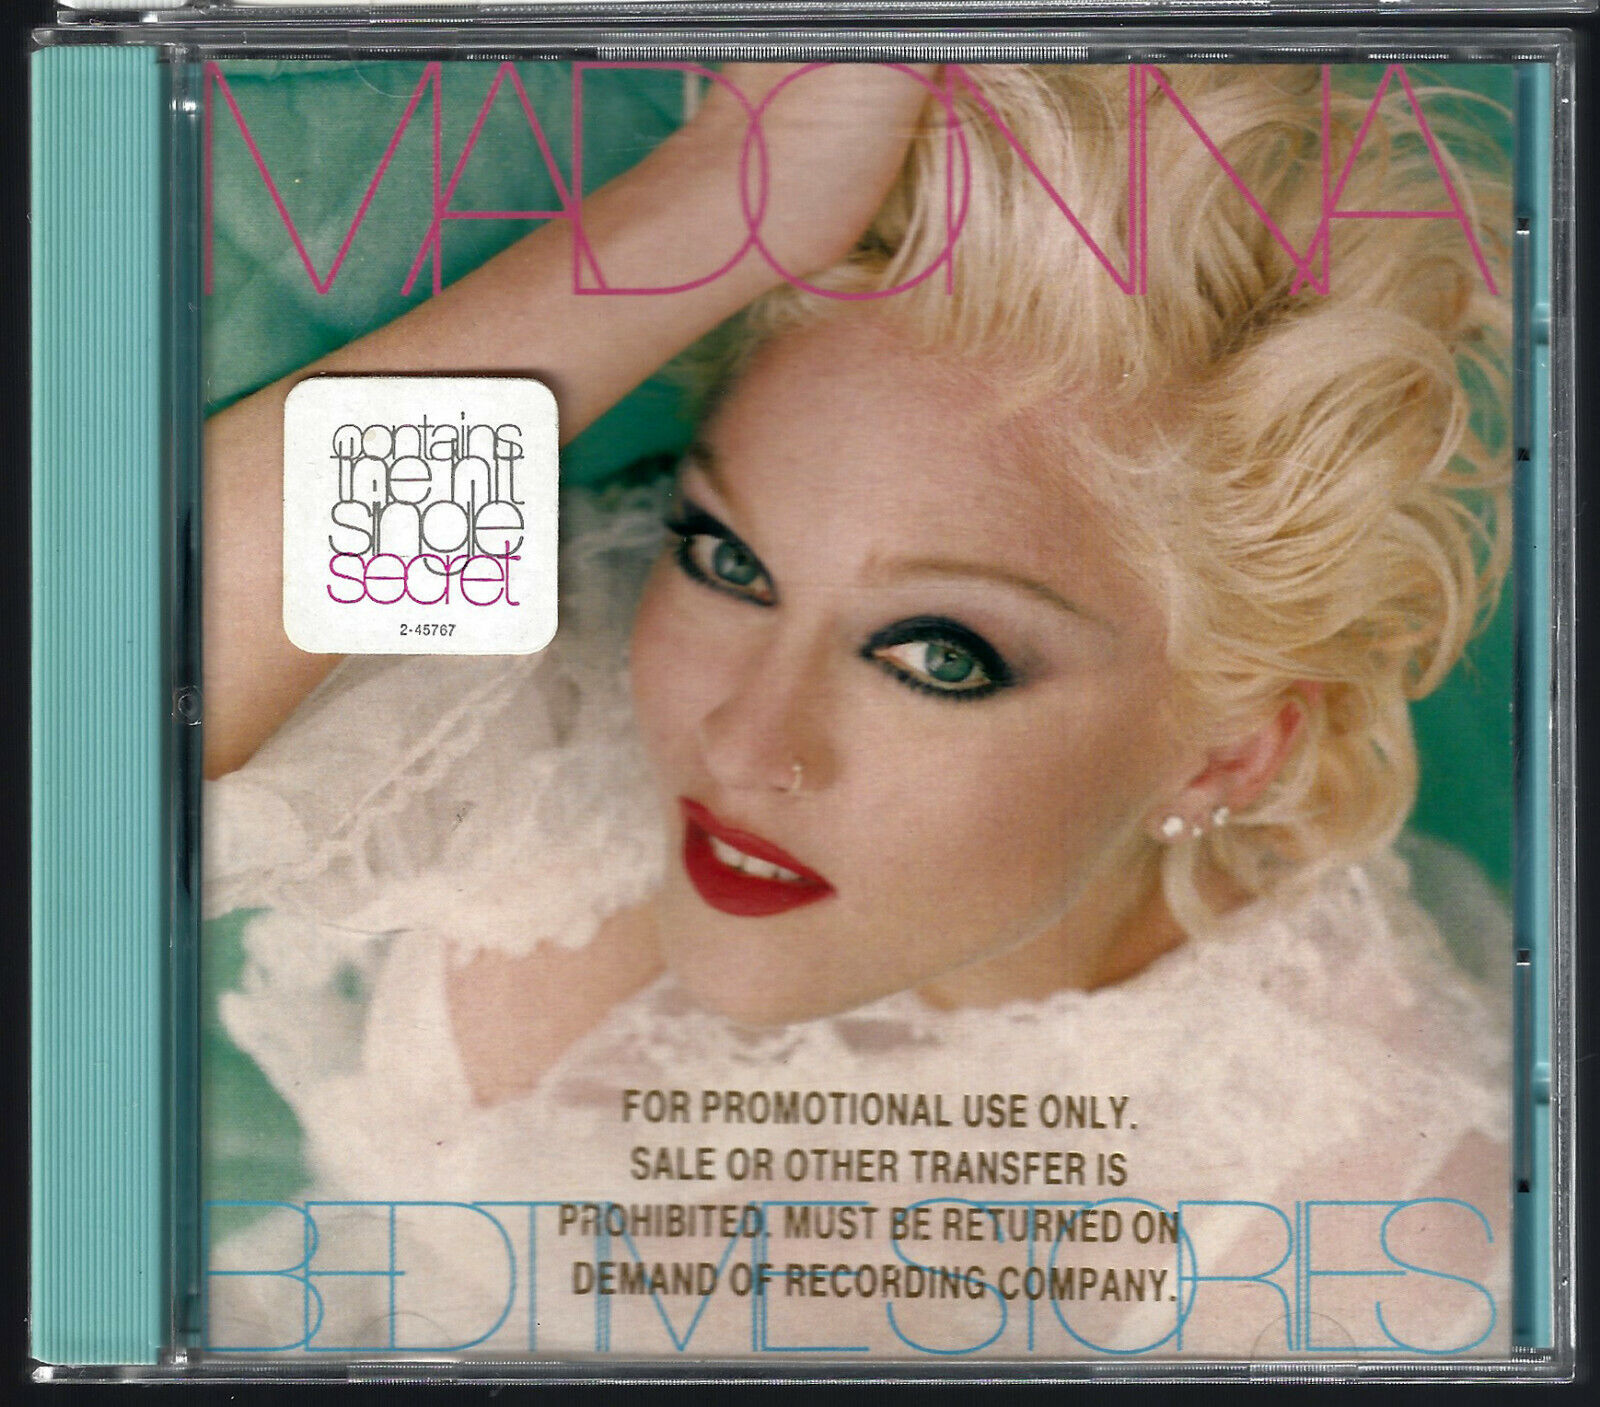 Madonna - Bedtime Stories CD 1994 Warner Bros. 9362-45767-2 Promo